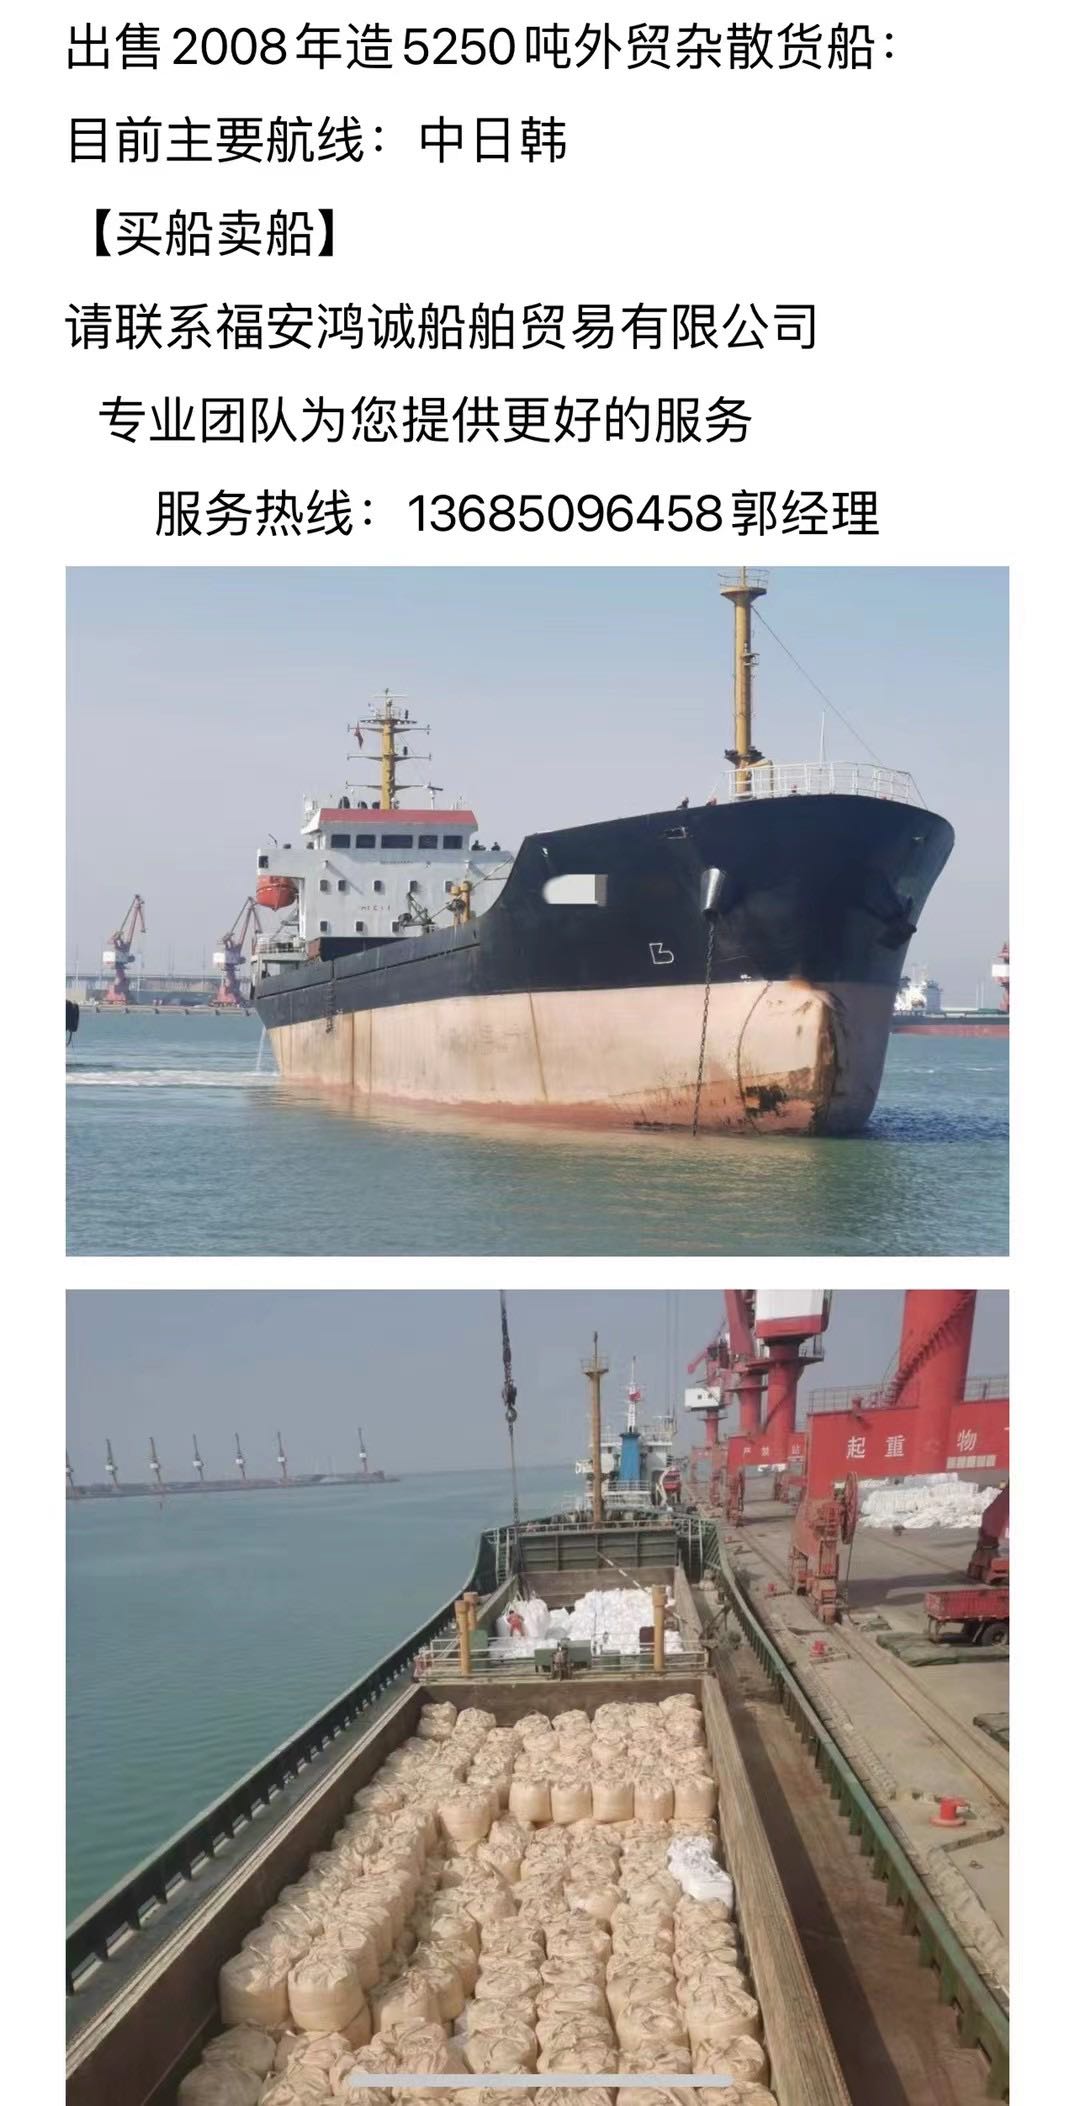 出售：08年〈三艘〉在航外贸杂散货船